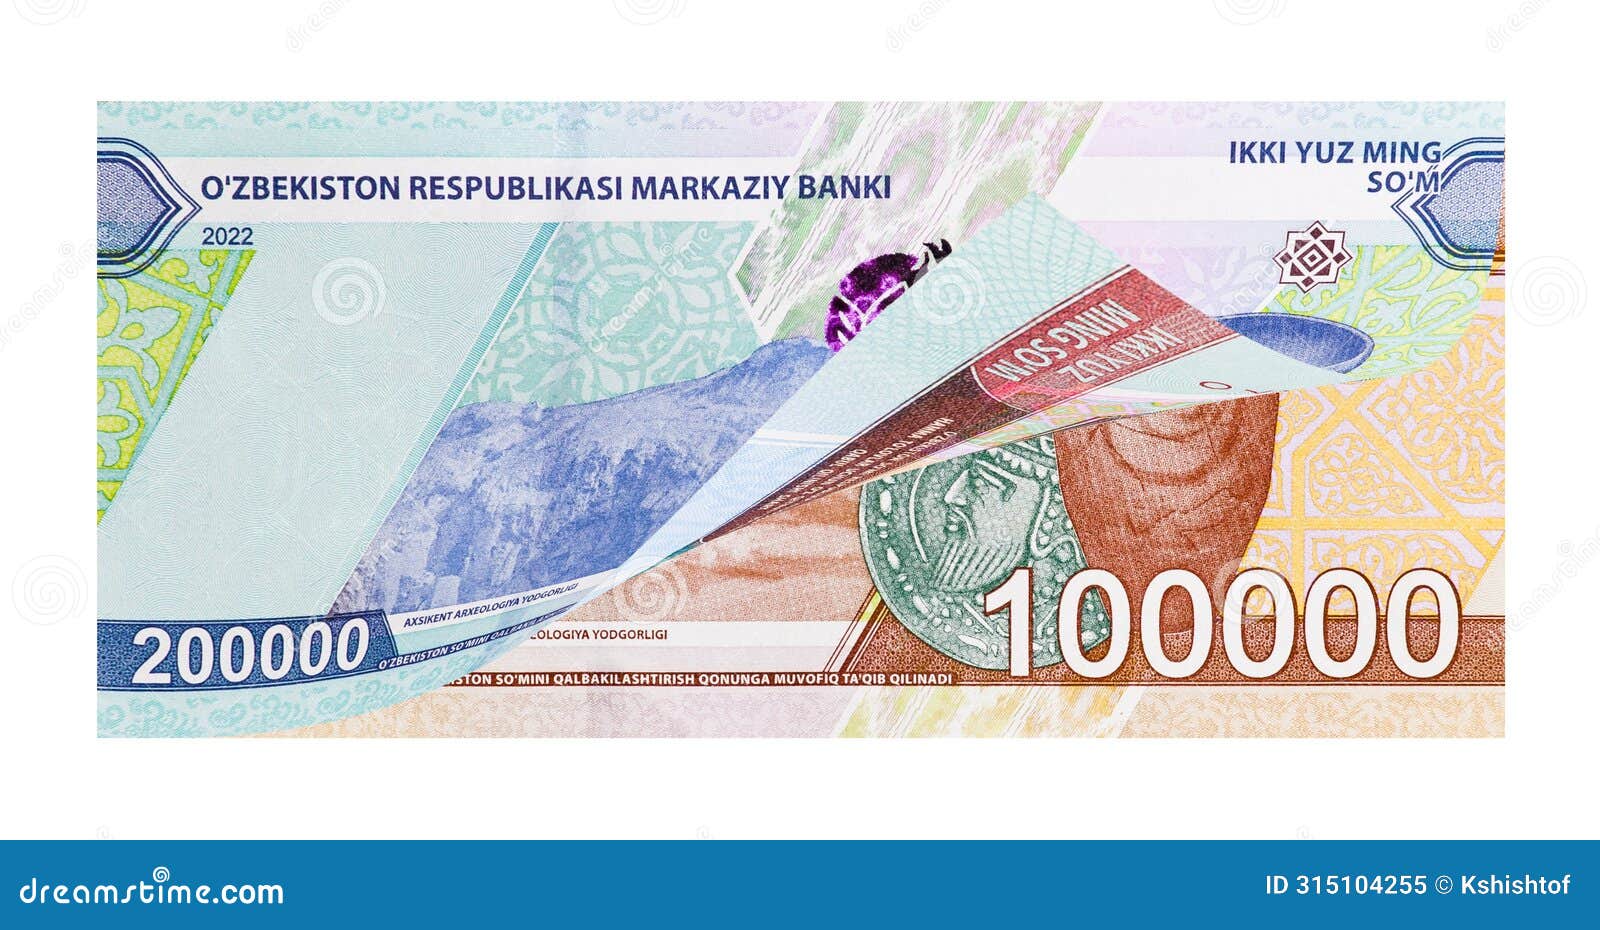 uzbek currency devaluation concept